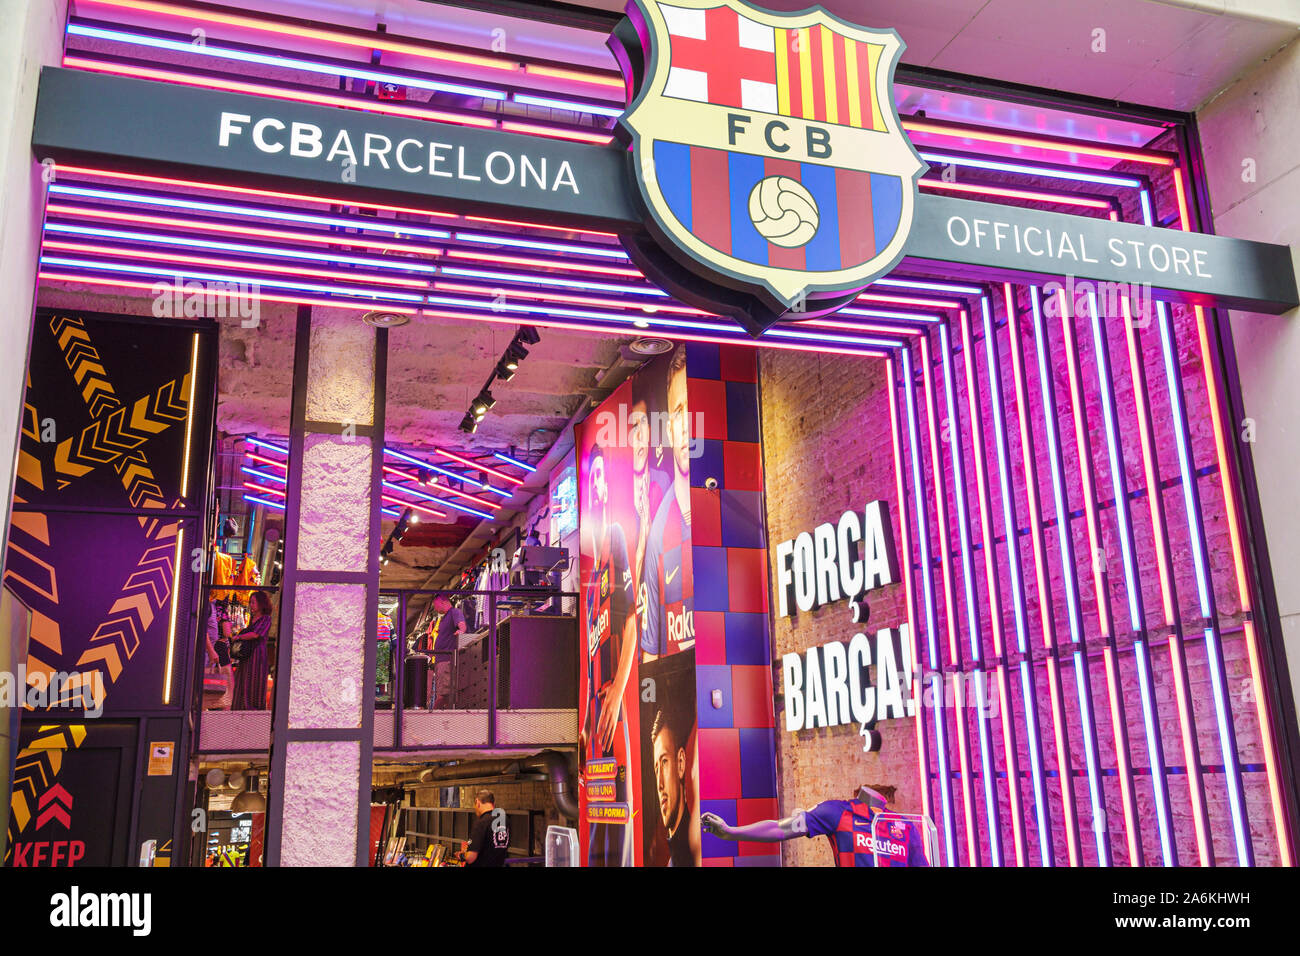 Barcelone Espagne,Catalogne Passeig de Gracia,FFCBarcelona FCB Barca Boutique officielle,équipe de football professionnel de futbol,merchandising,sport Banque D'Images